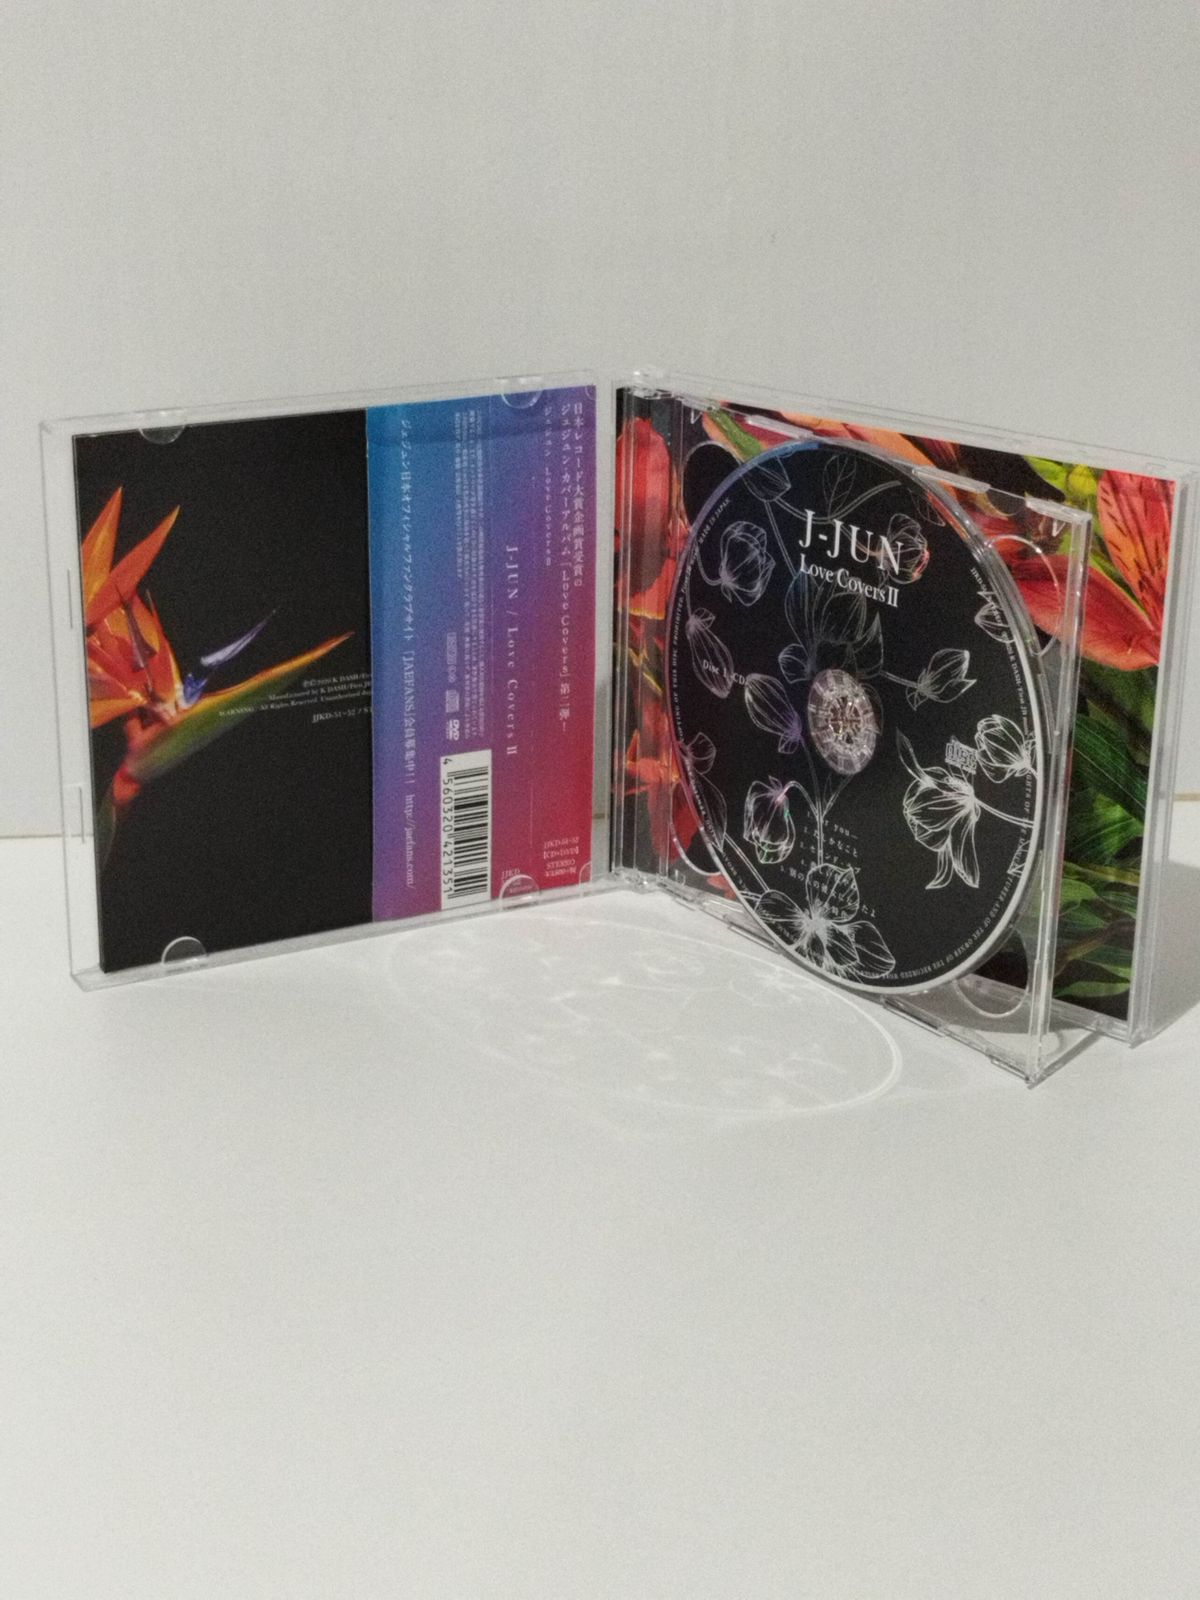 CD】 Love Covers II (初回生産限定盤) / ラブ カバーズ ２ J-JUN 